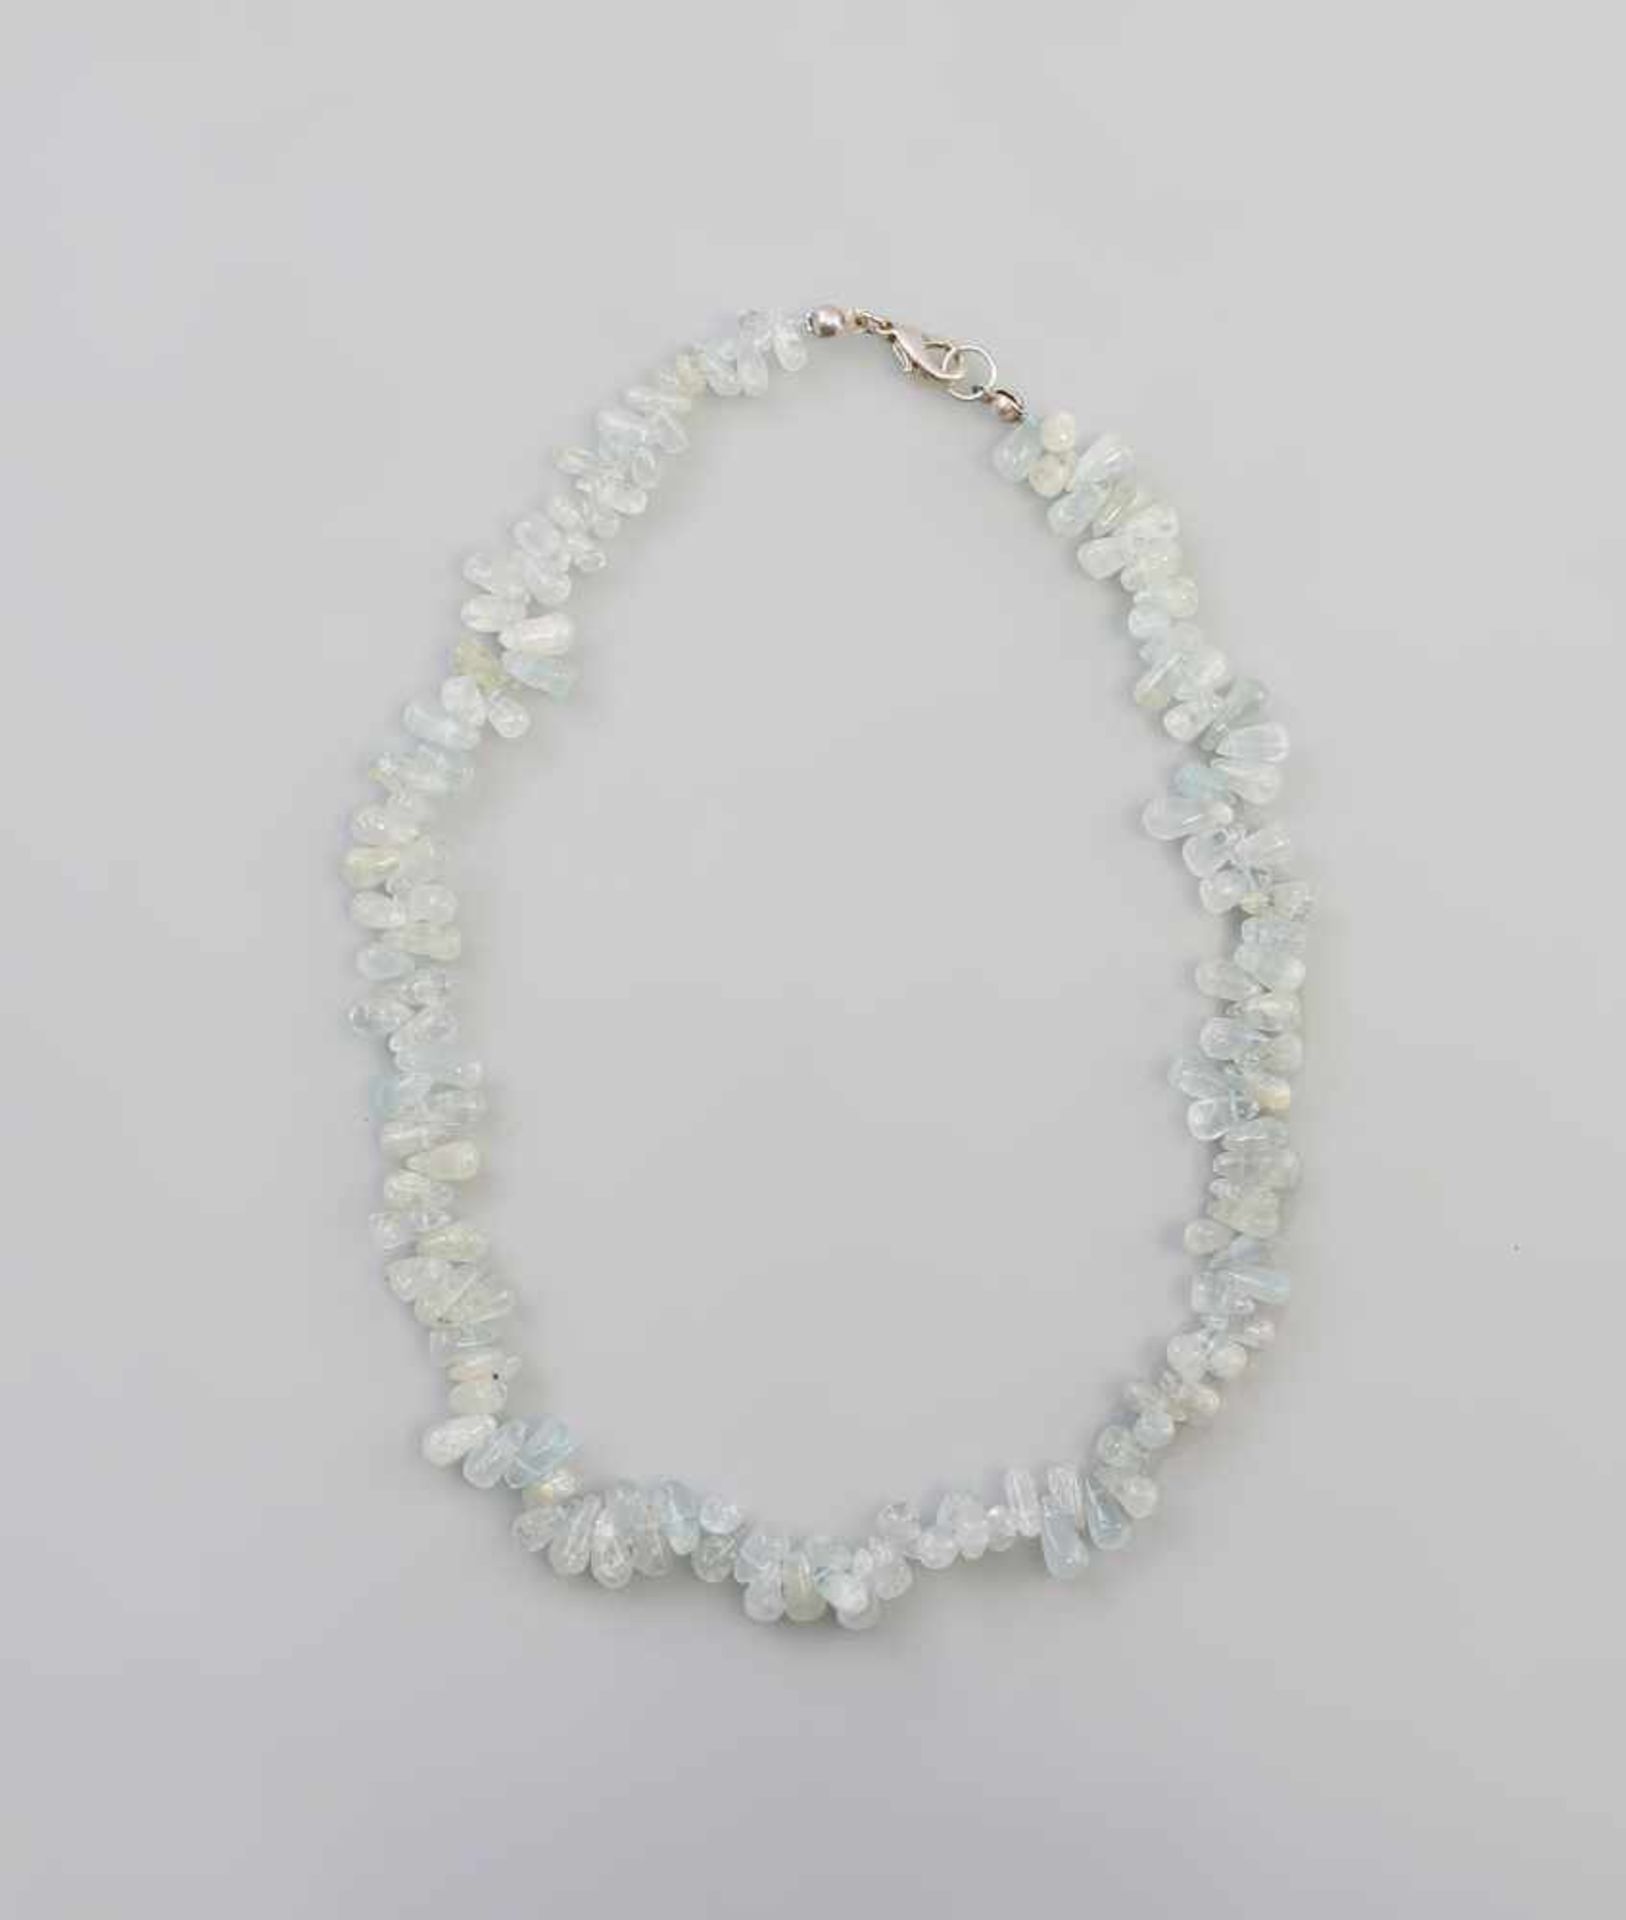 weiß-blaue Achat-Kette. unregelmäßig geformte, polierte Perlen aus durchscheinendem weiß-